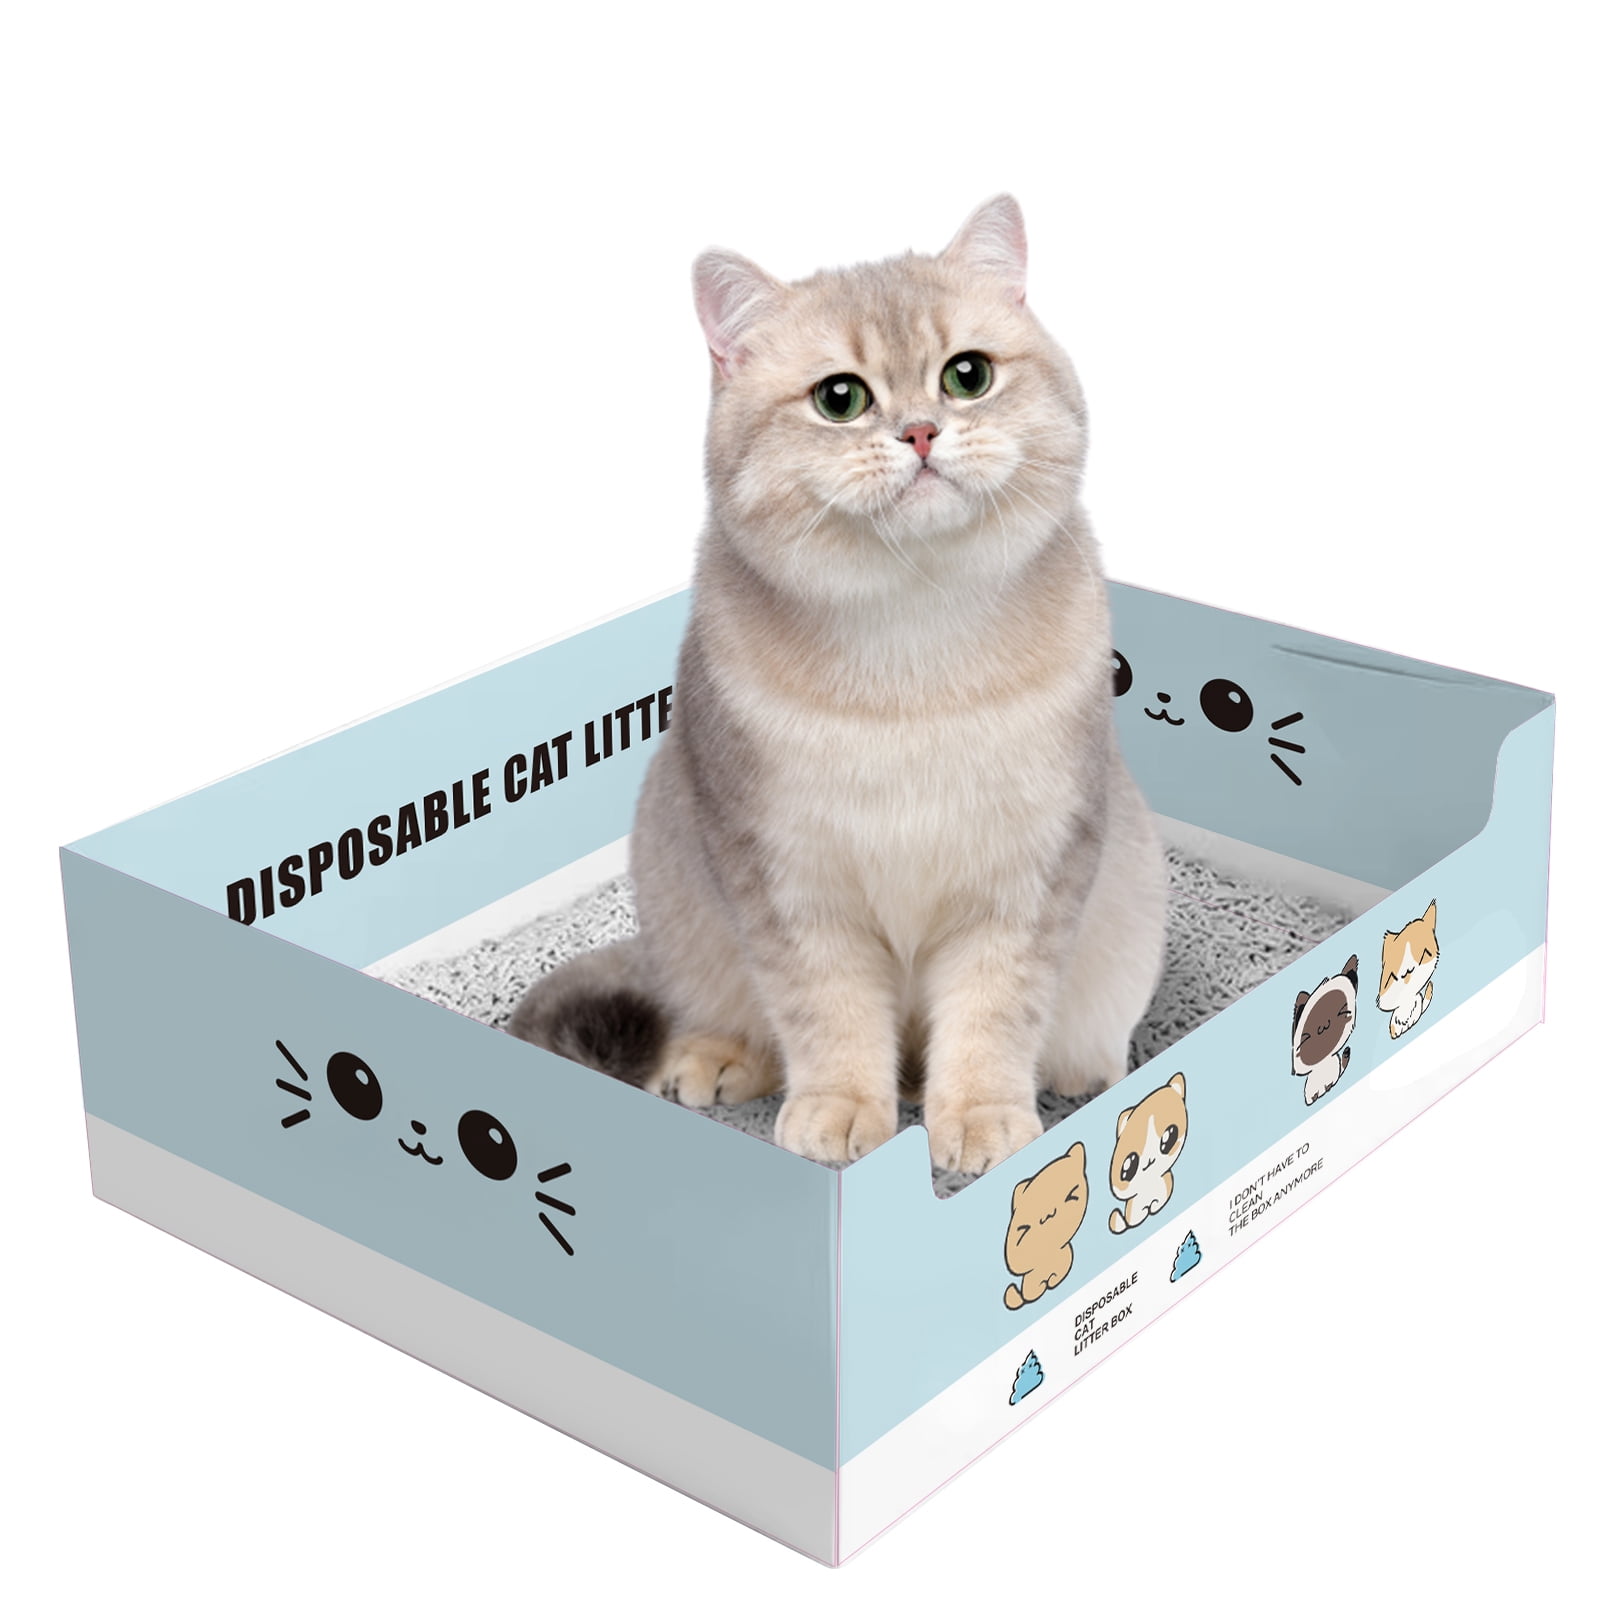 Disposable Cat Litter Box Waterproof Open Top Pet Cat Litter Box